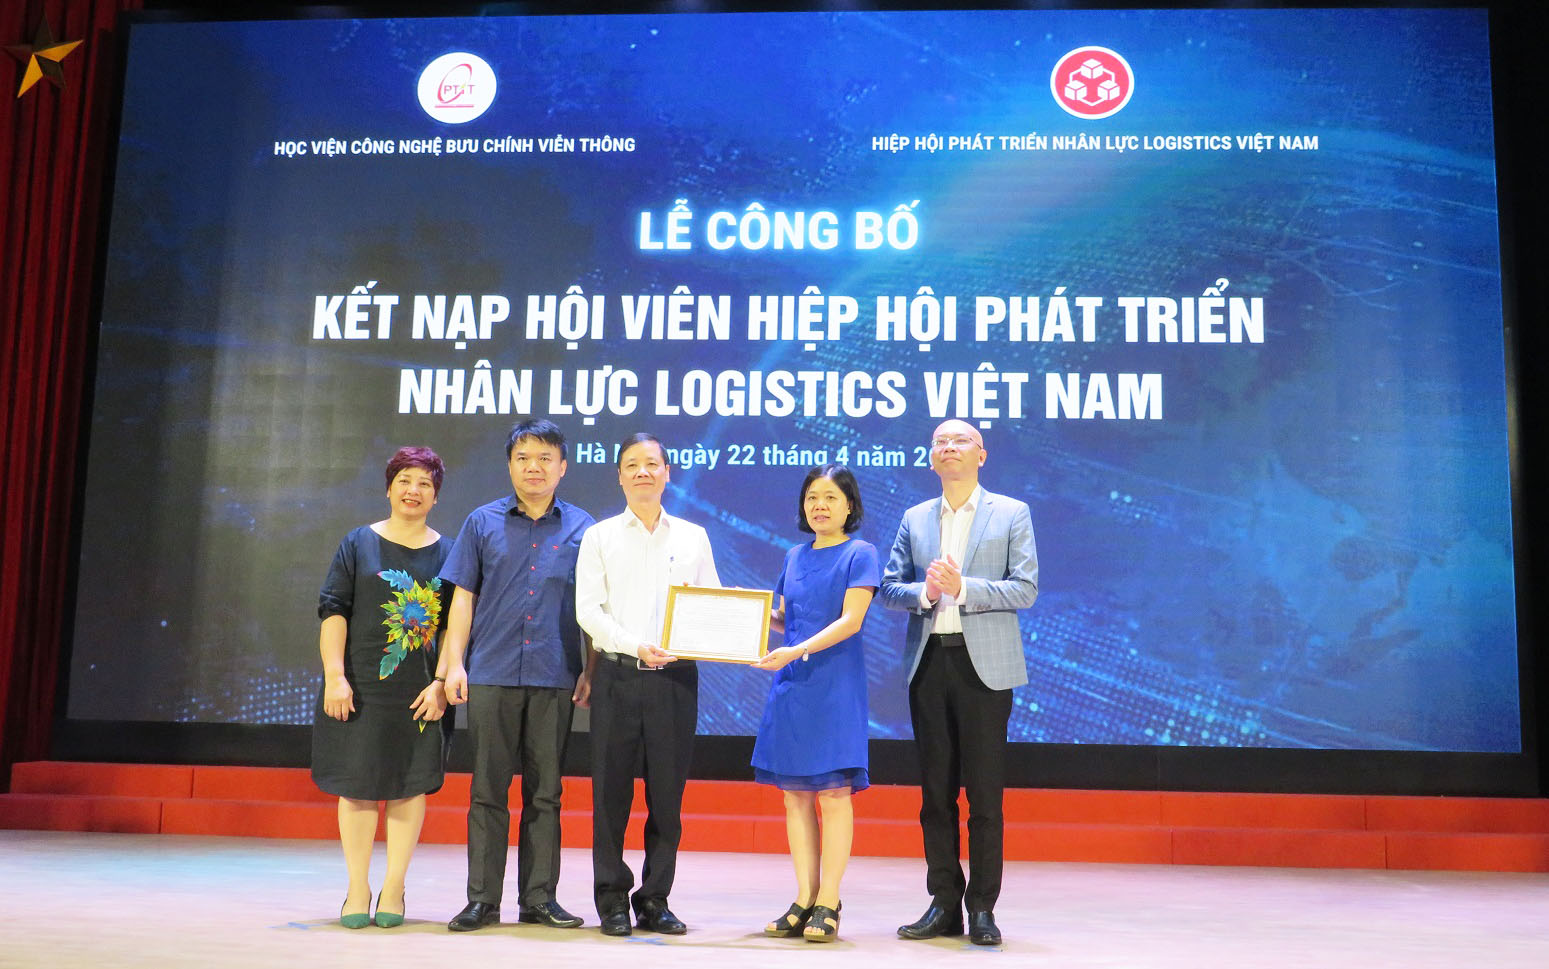 Trong khuôn khổ Tọa đàm, Ban Lãnh đạo Hiệp hội Phát triển nhân lực Logistics Việt Nam (VALOMA) đã chính thức trao Chứng nhận hội viên cho Học viện Công nghệ Bưu chính viễn thông